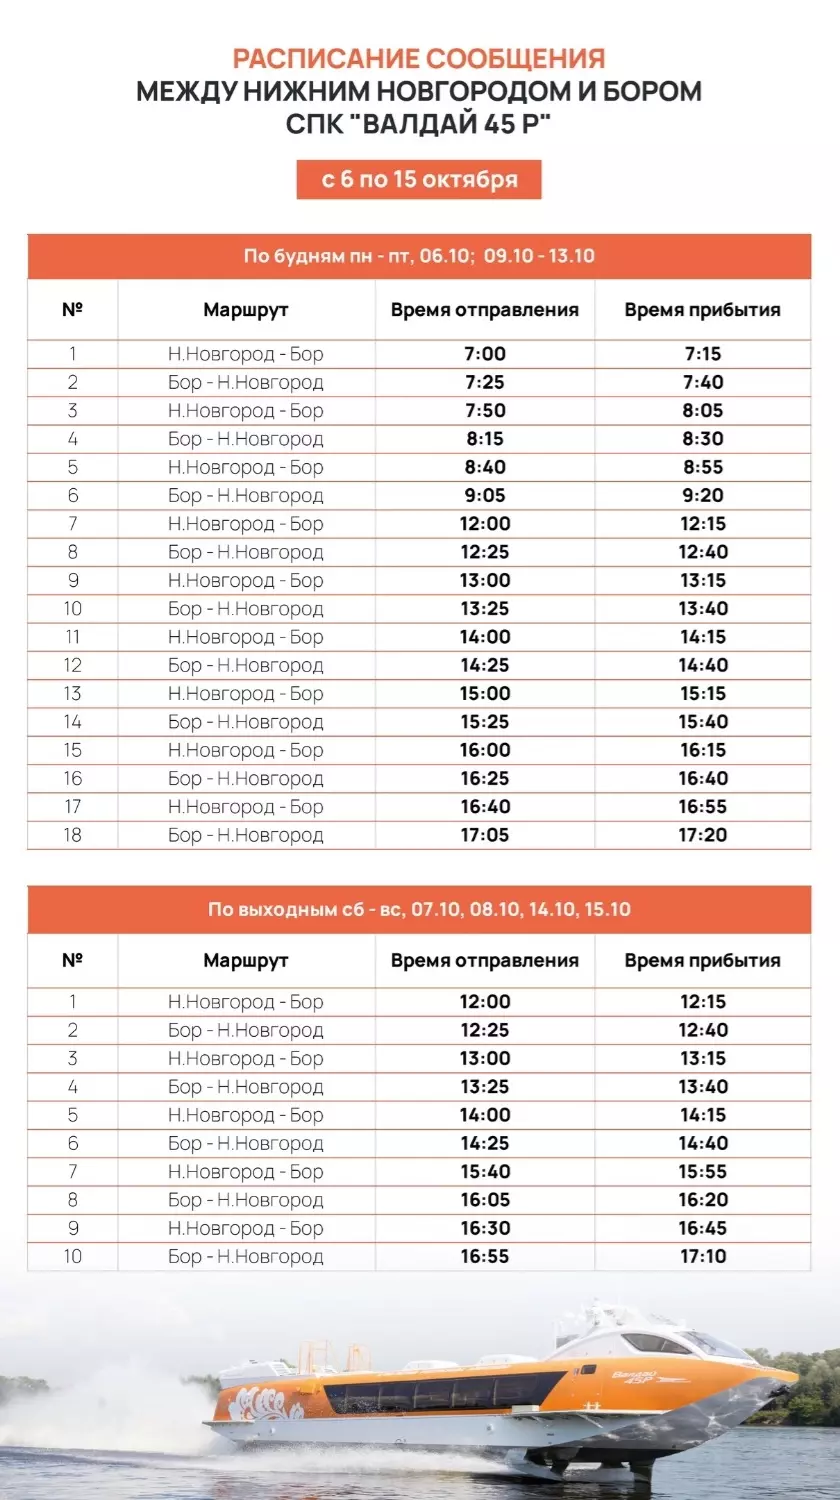 Расписание «Валдая» Нижний Новгород — Бор изменится с 6 октября